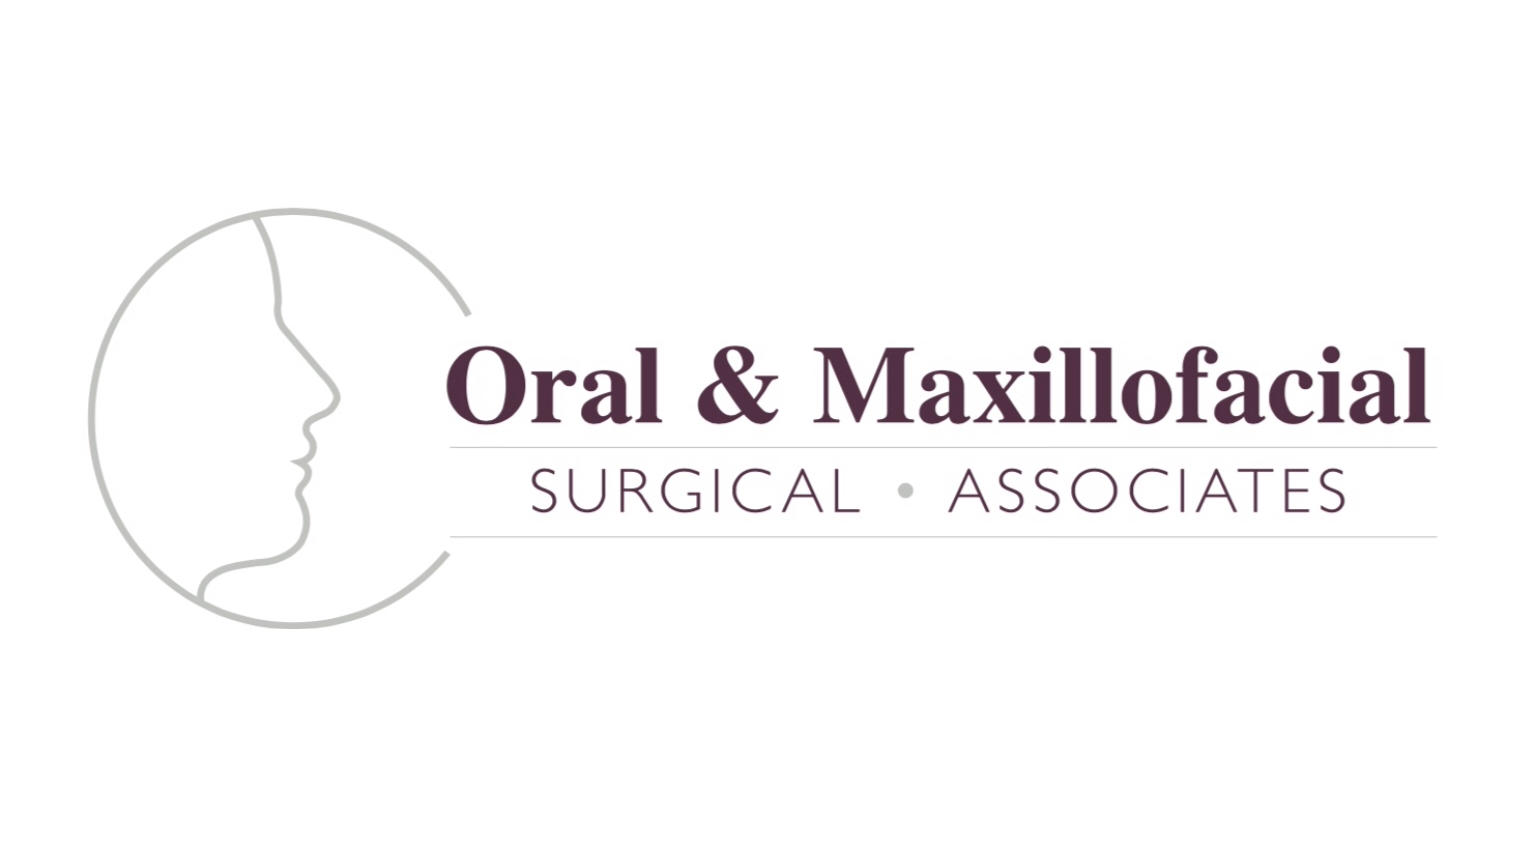 Oral & Maxillofacial Surgical Associates